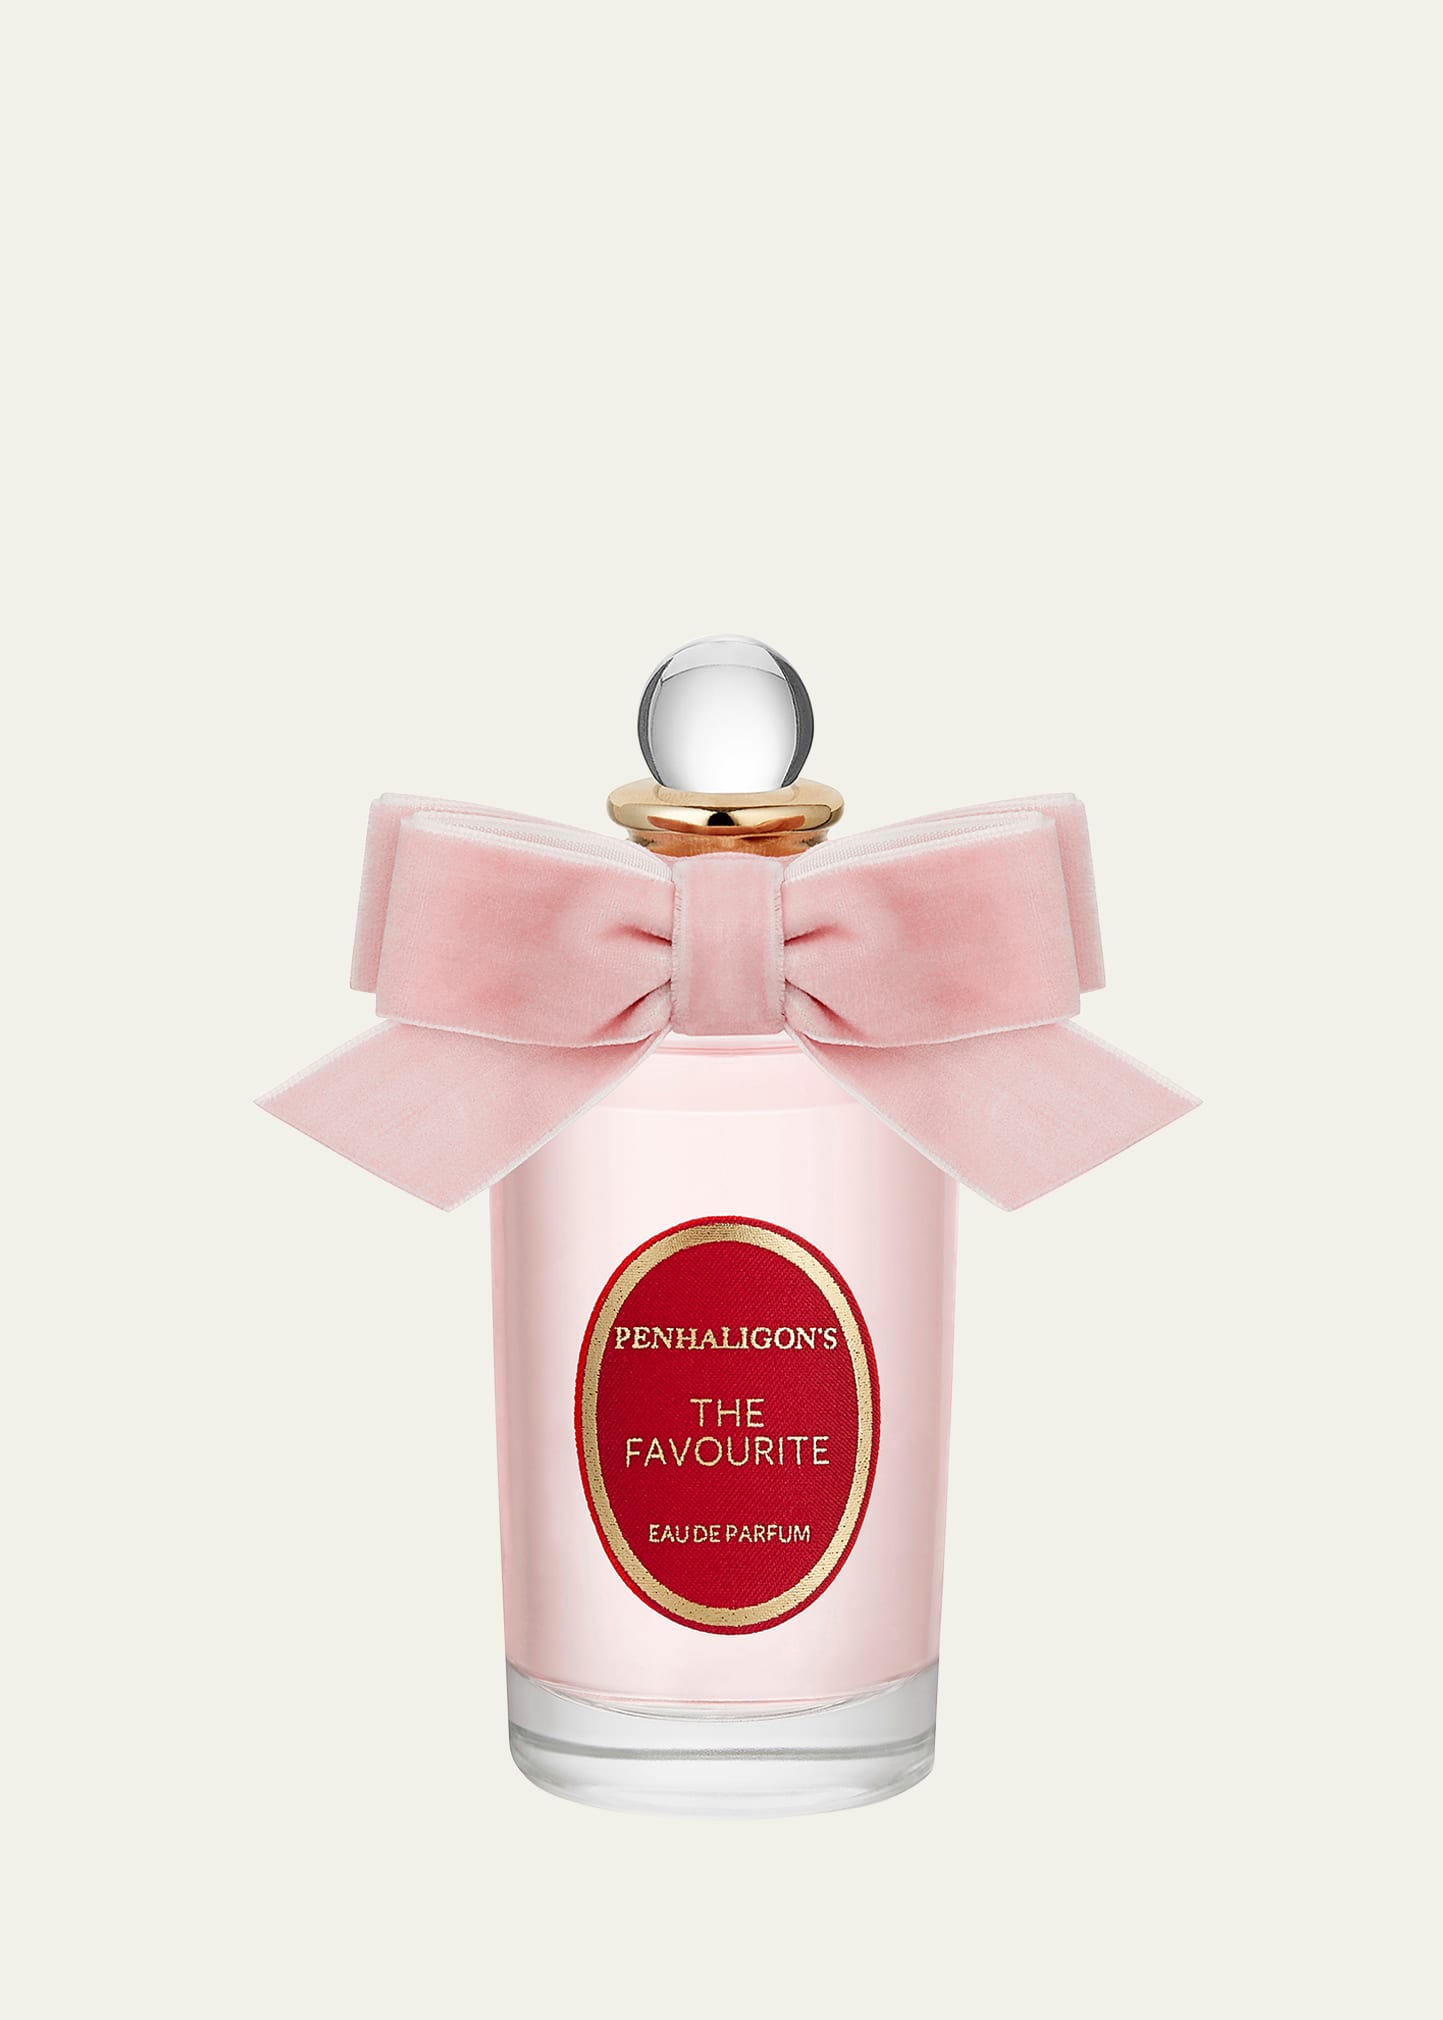 The Favourite Eau de Parfum, 3.4 oz.